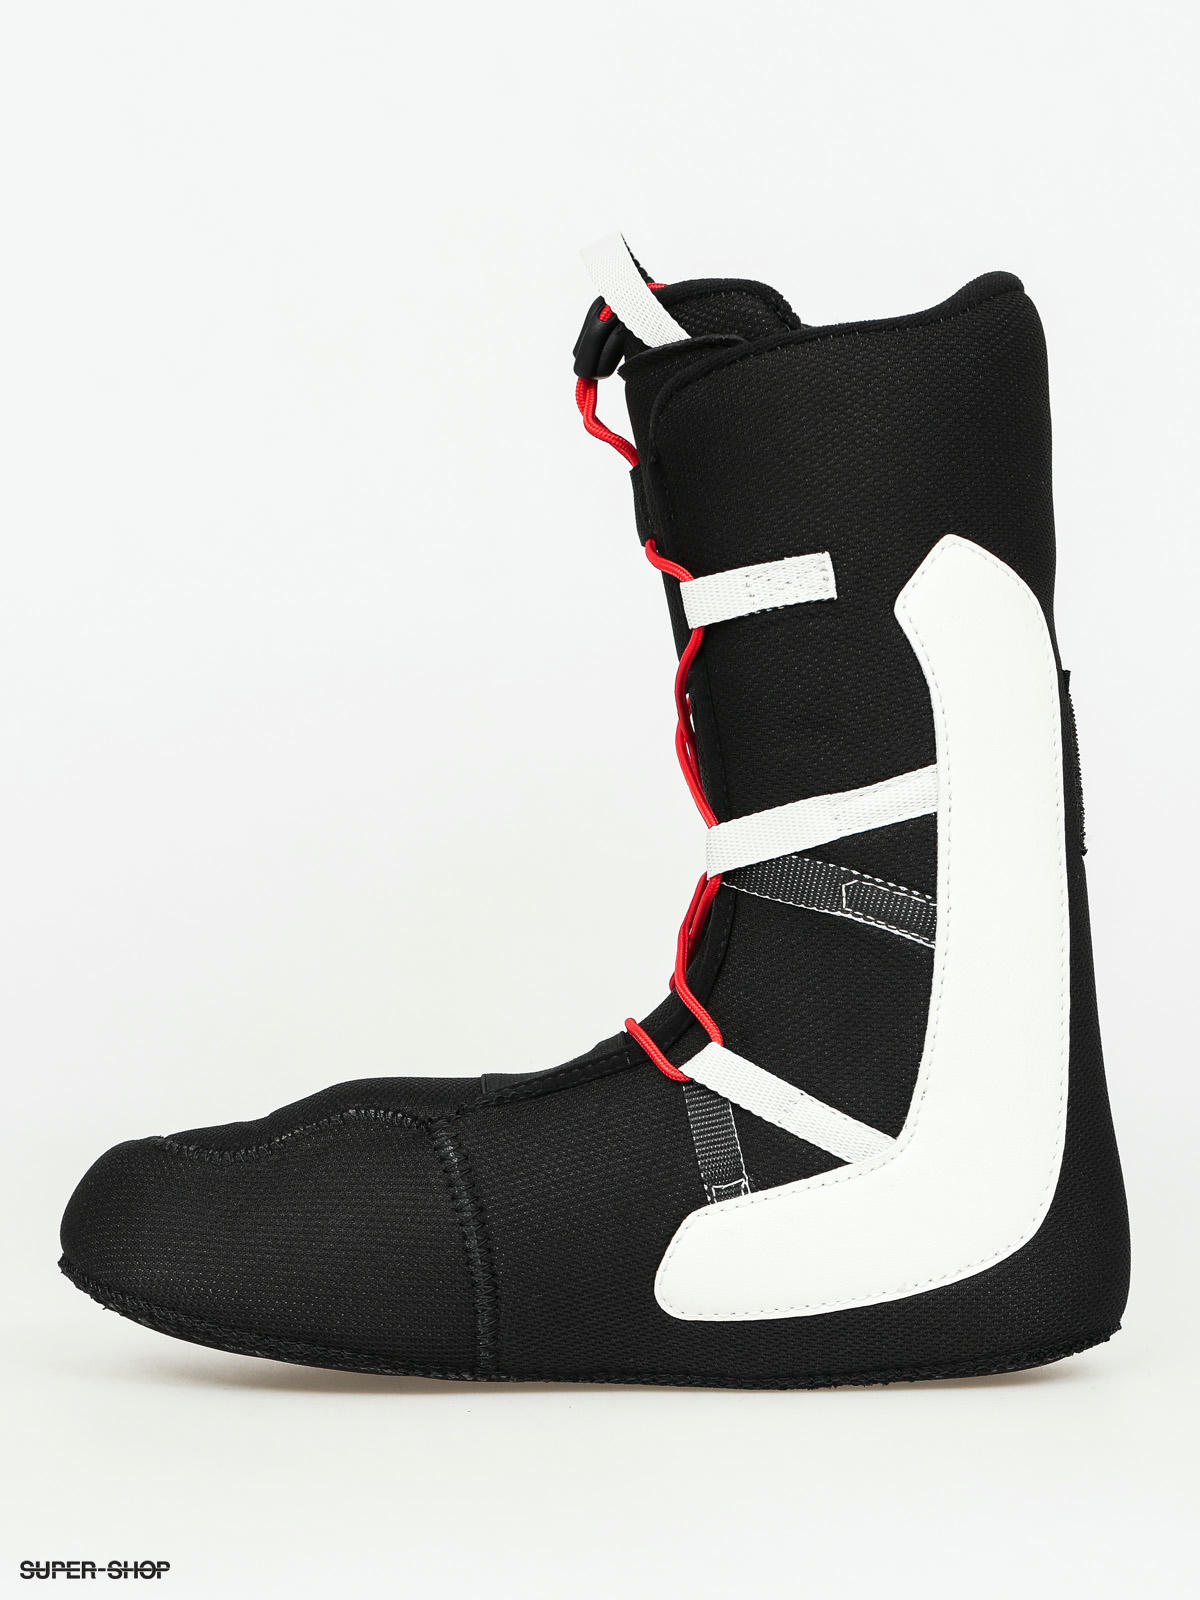 Deeluxe Snowboard boots Alpha (black)